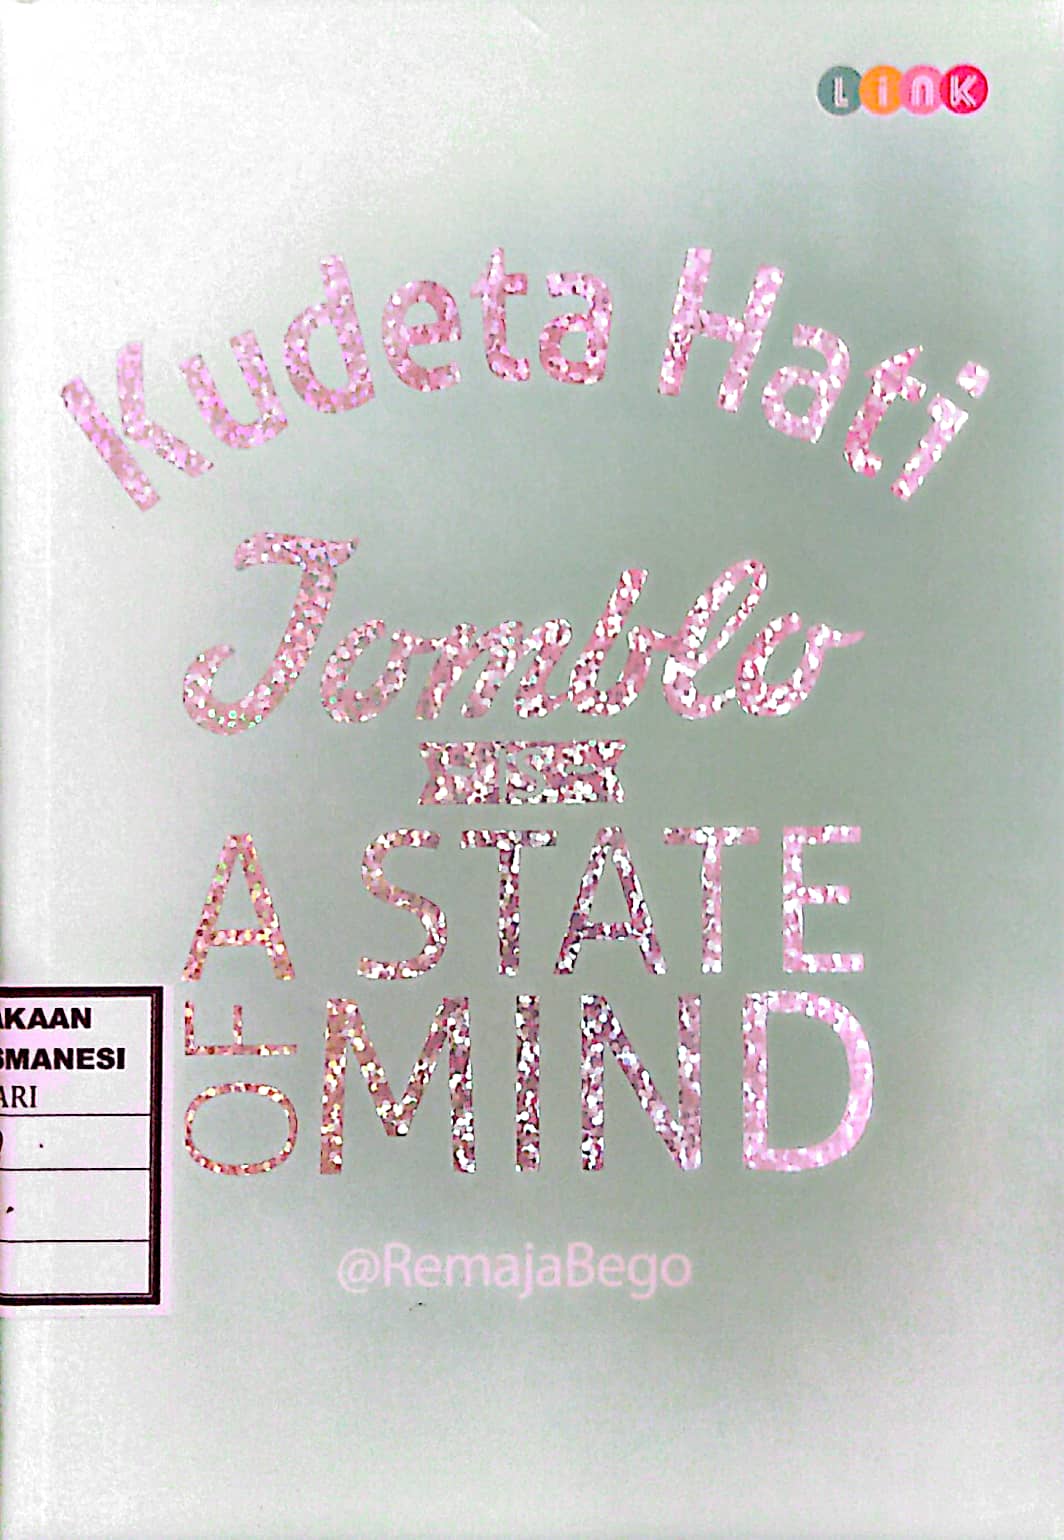 Kudeta Hati Jomblo Is a State of Mind